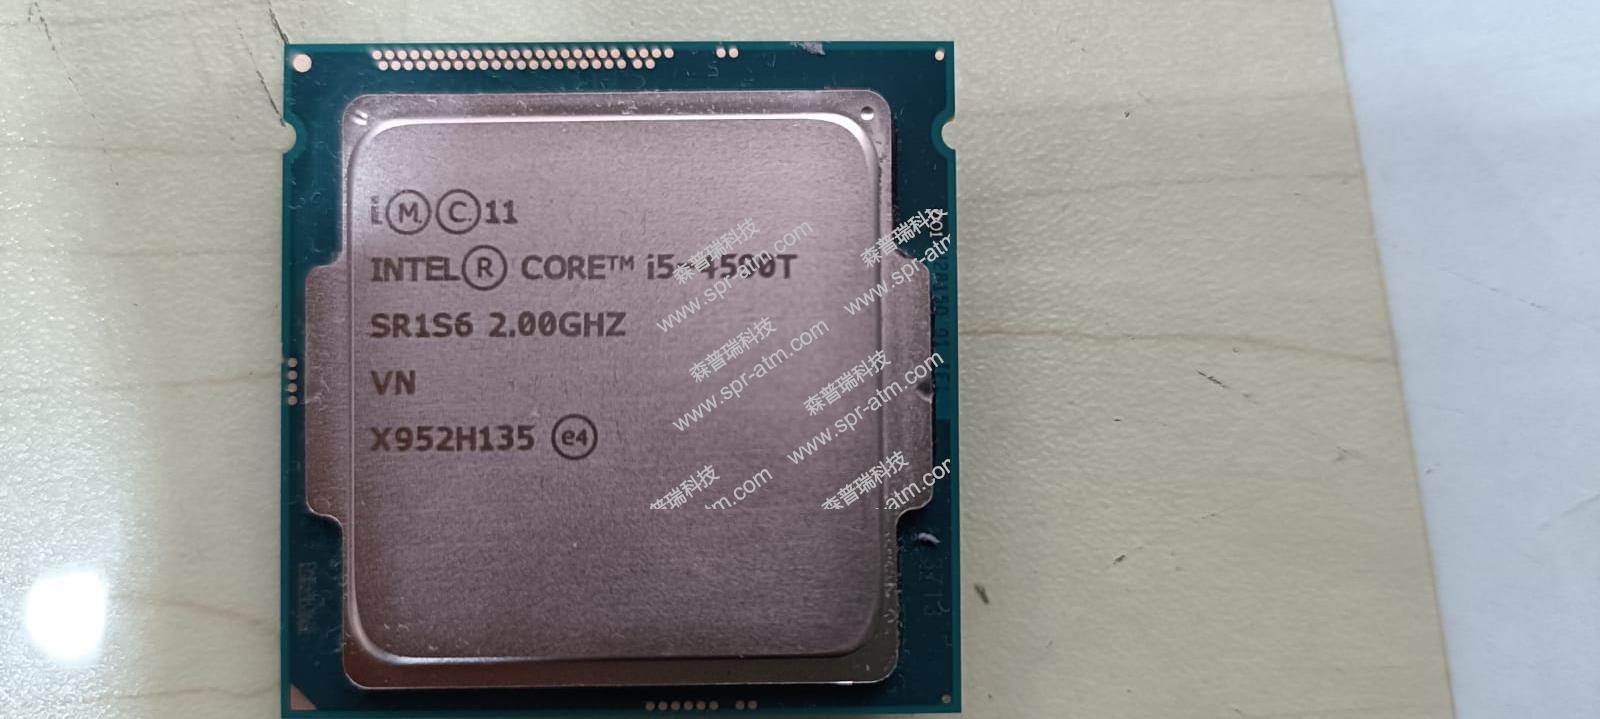 CPU I5-4590T